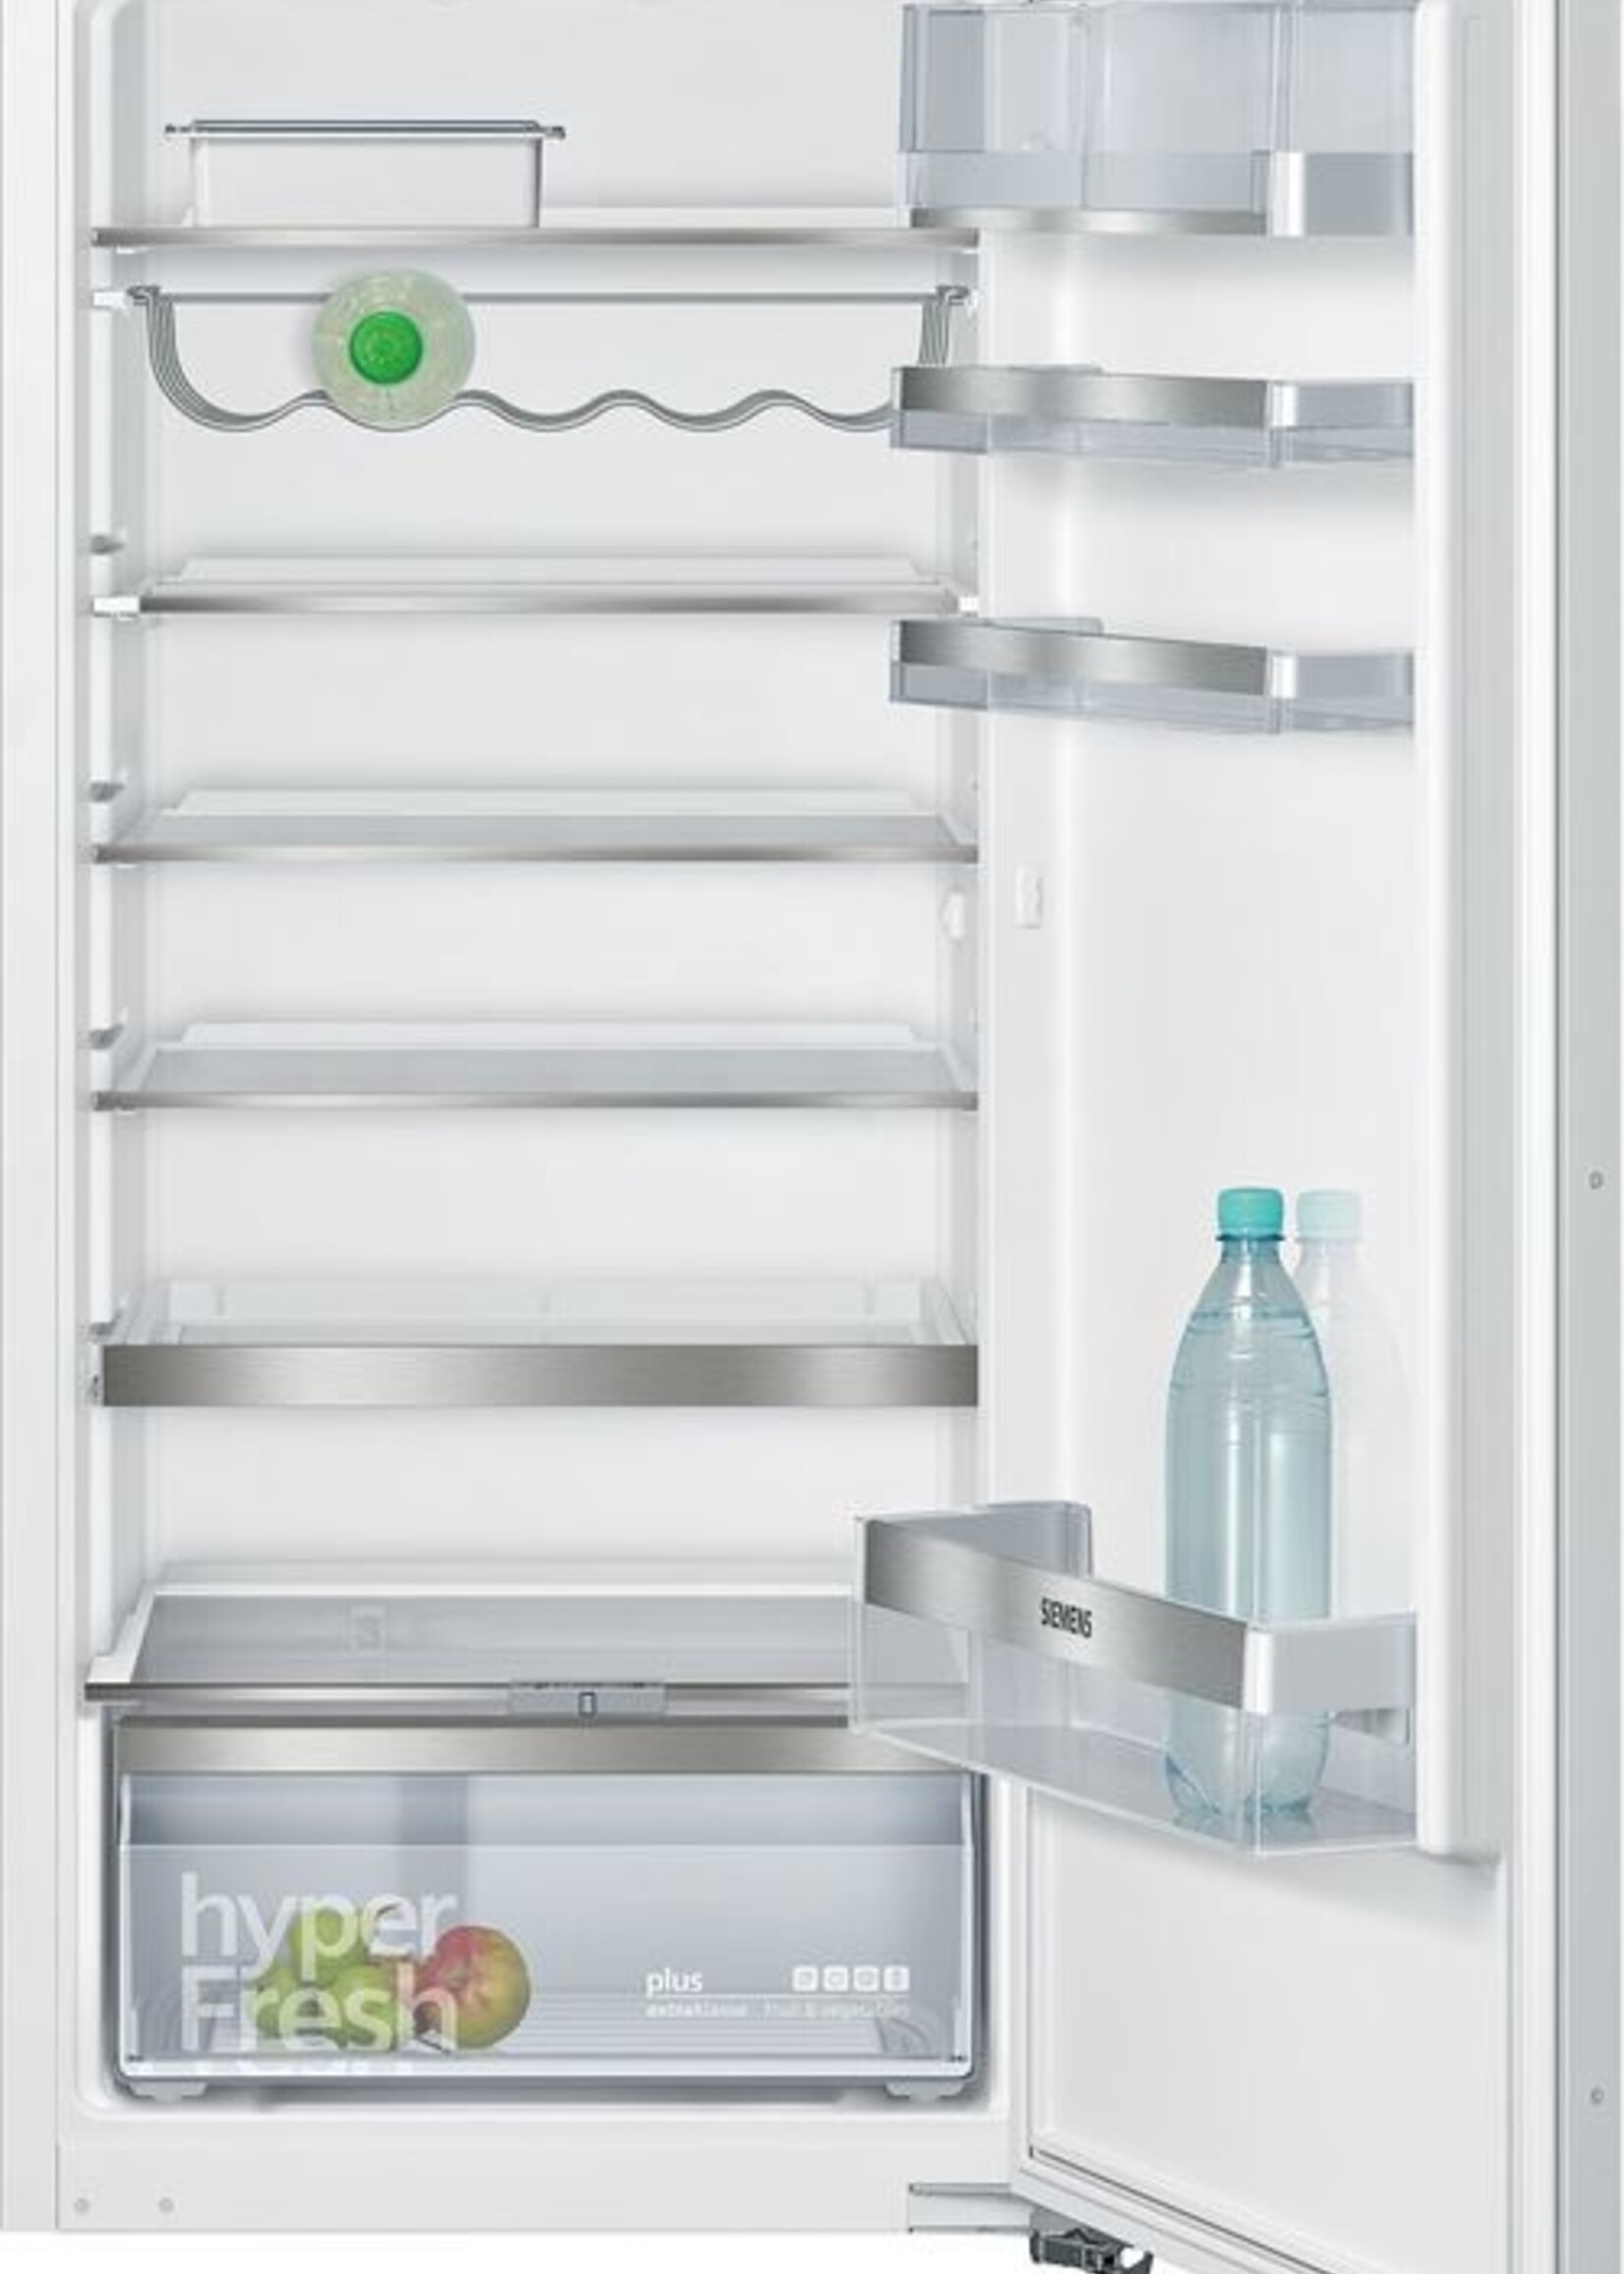 Siemens extraKlasse KI41REDD0 - Inbouw koelkast